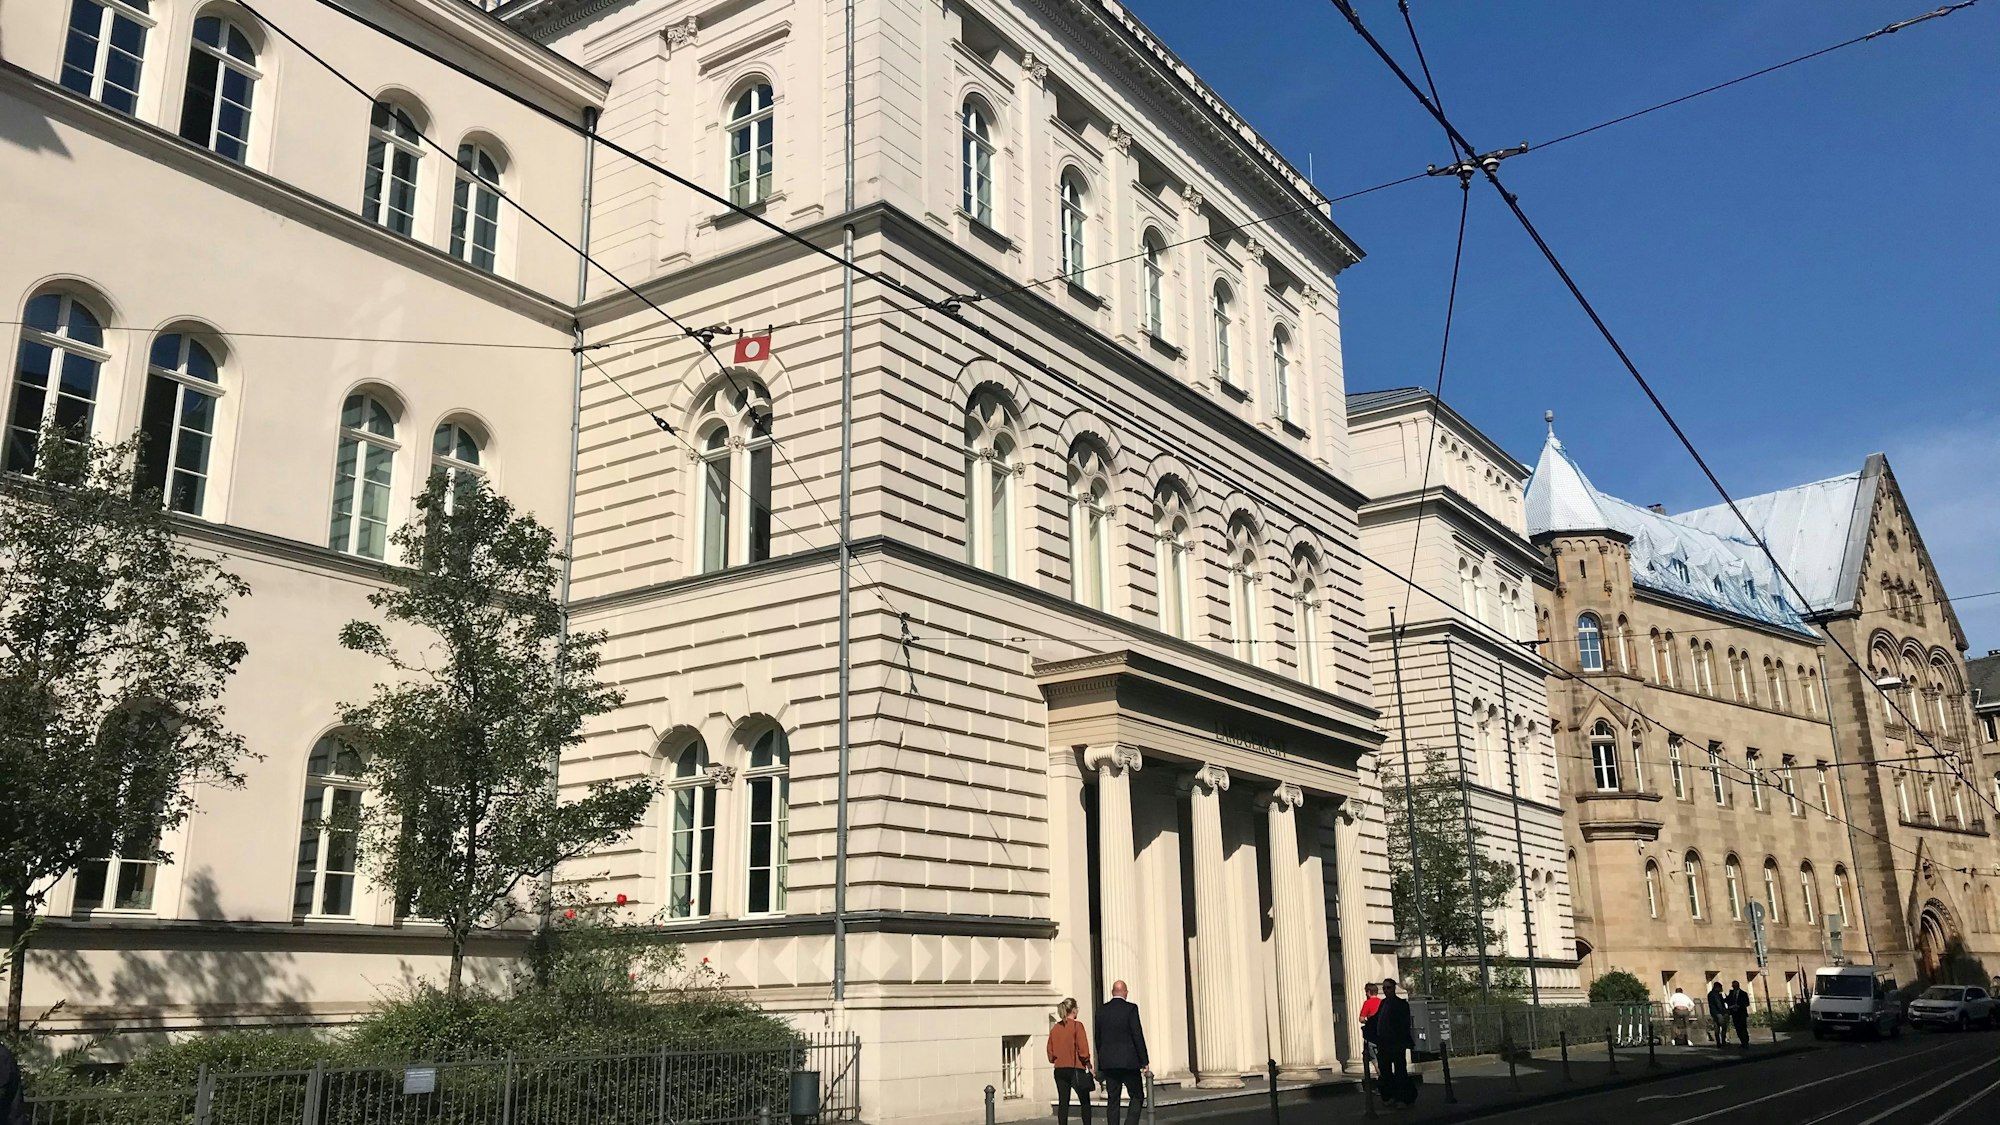 Das Bild zeigt die Fassade des Landgerichts in Bonn.